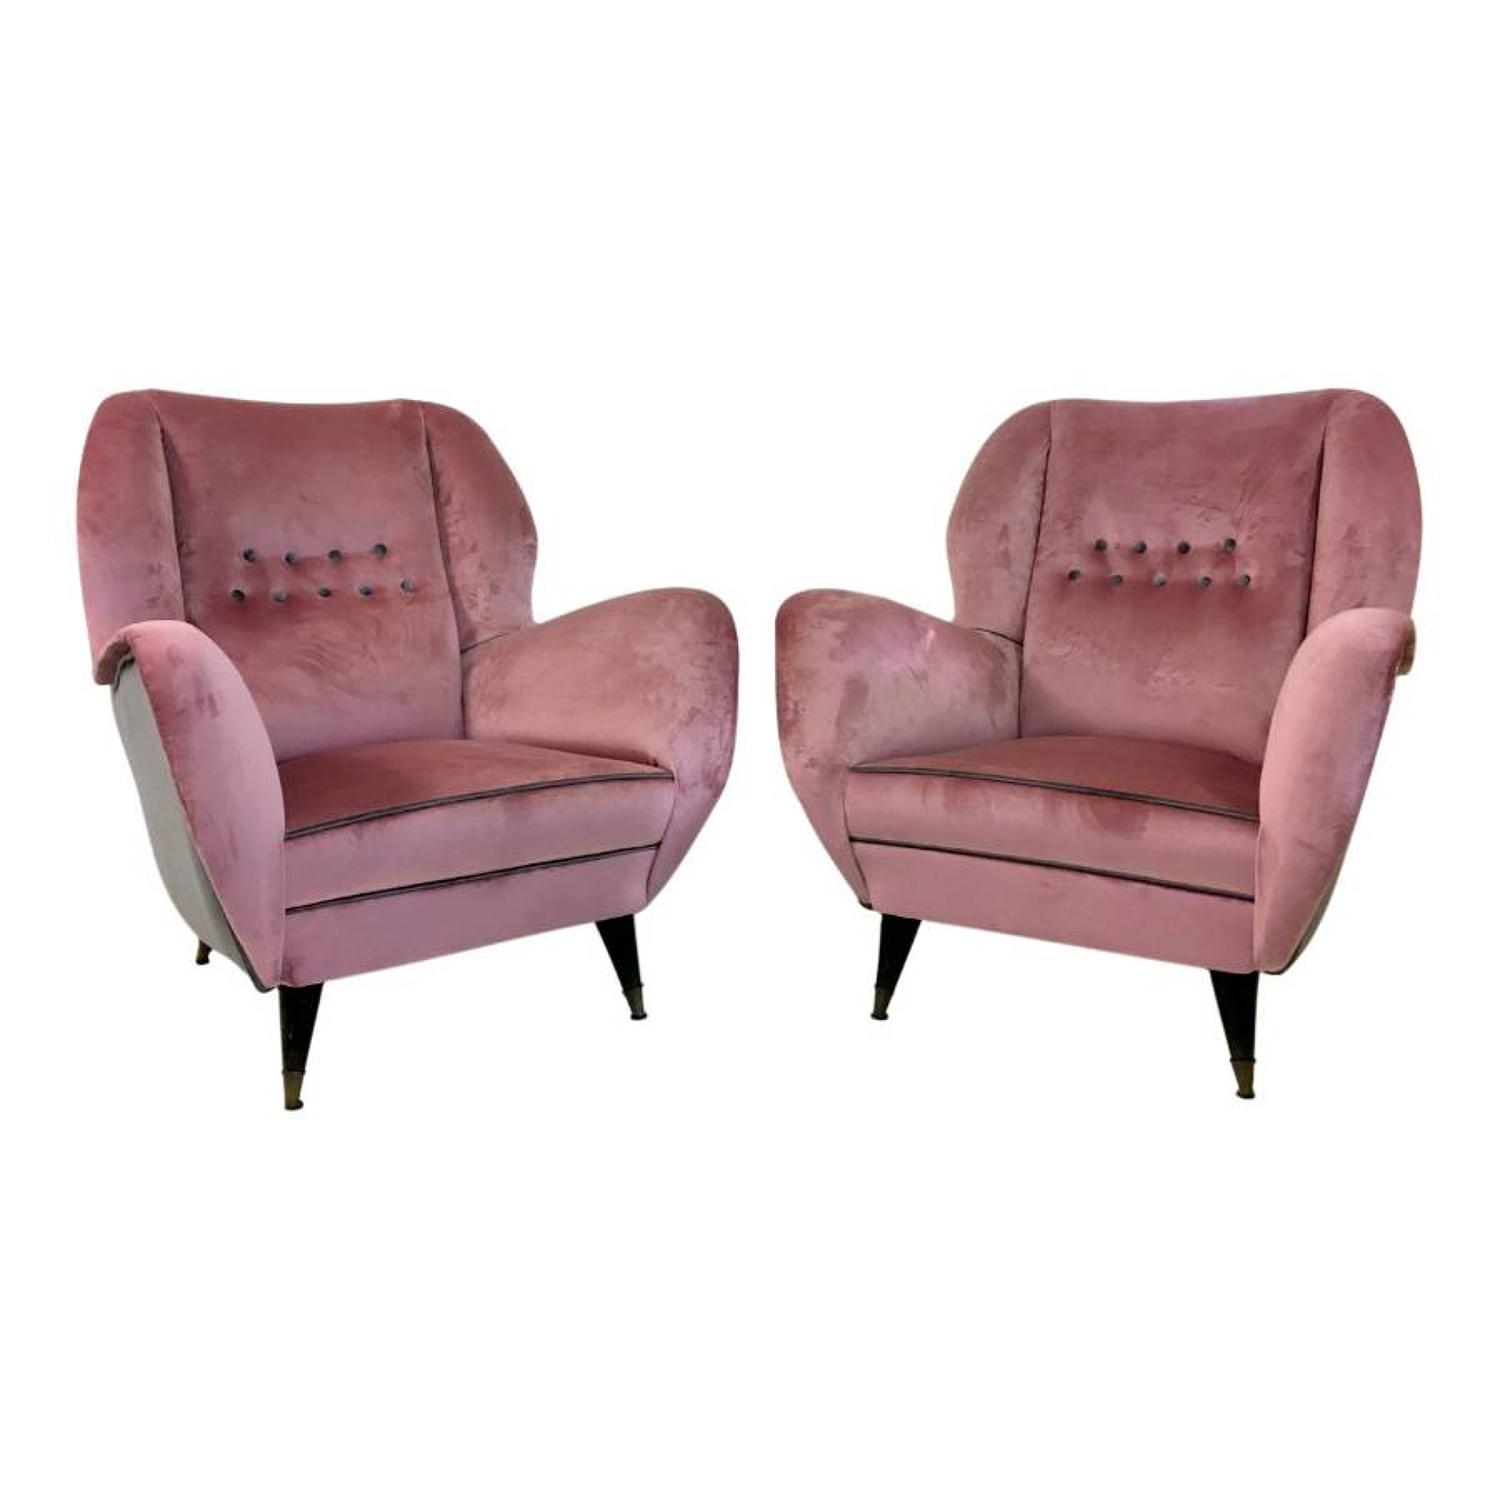 A pair of velvet upholstered Italian armchairs